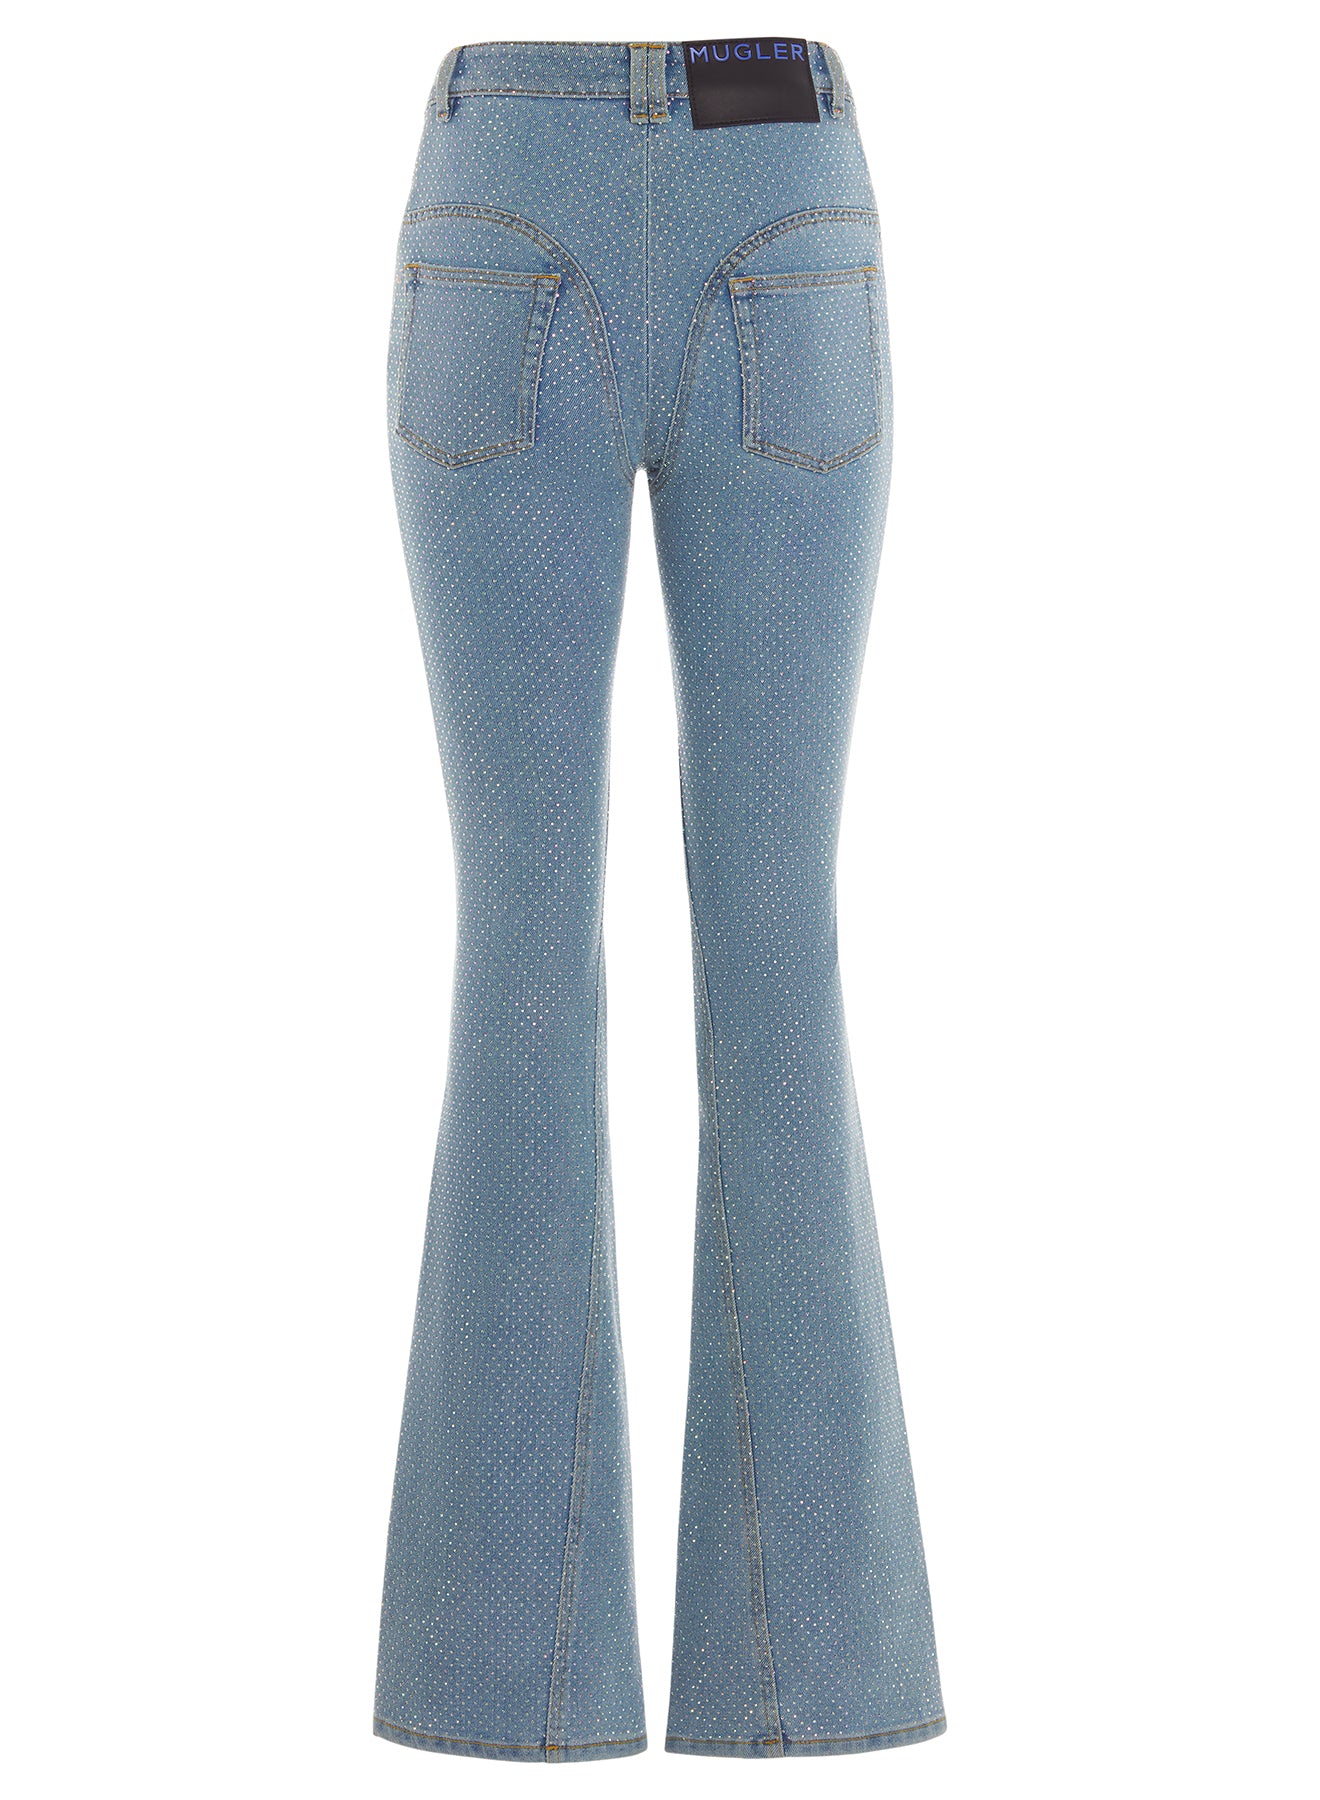 blue flared rhinestone jeans